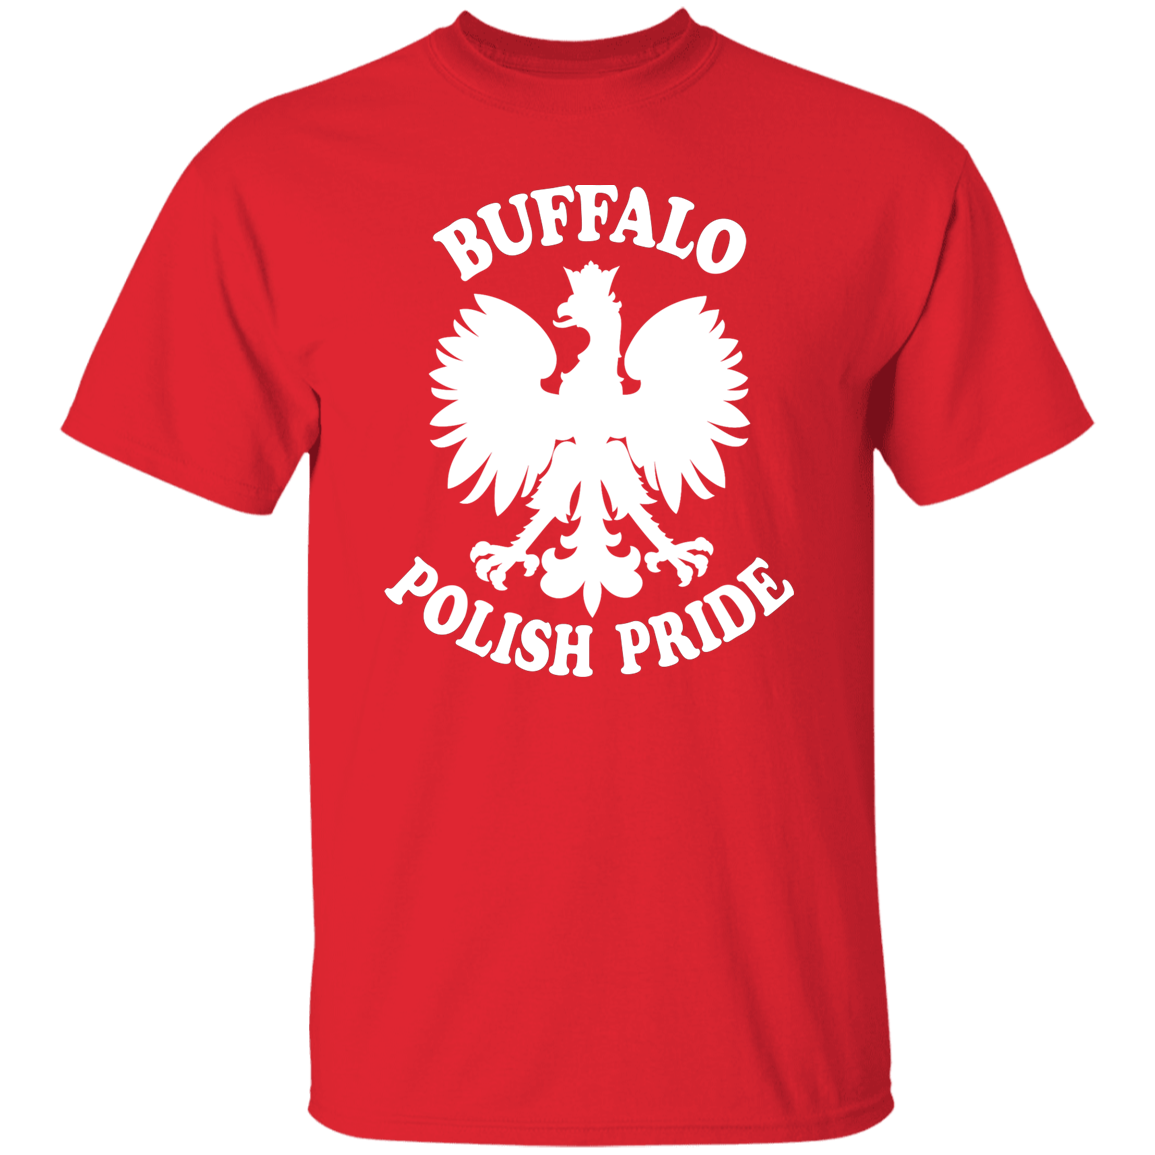 Buffalo Polish Pride Apparel CustomCat G500 5.3 oz. T-Shirt Red S